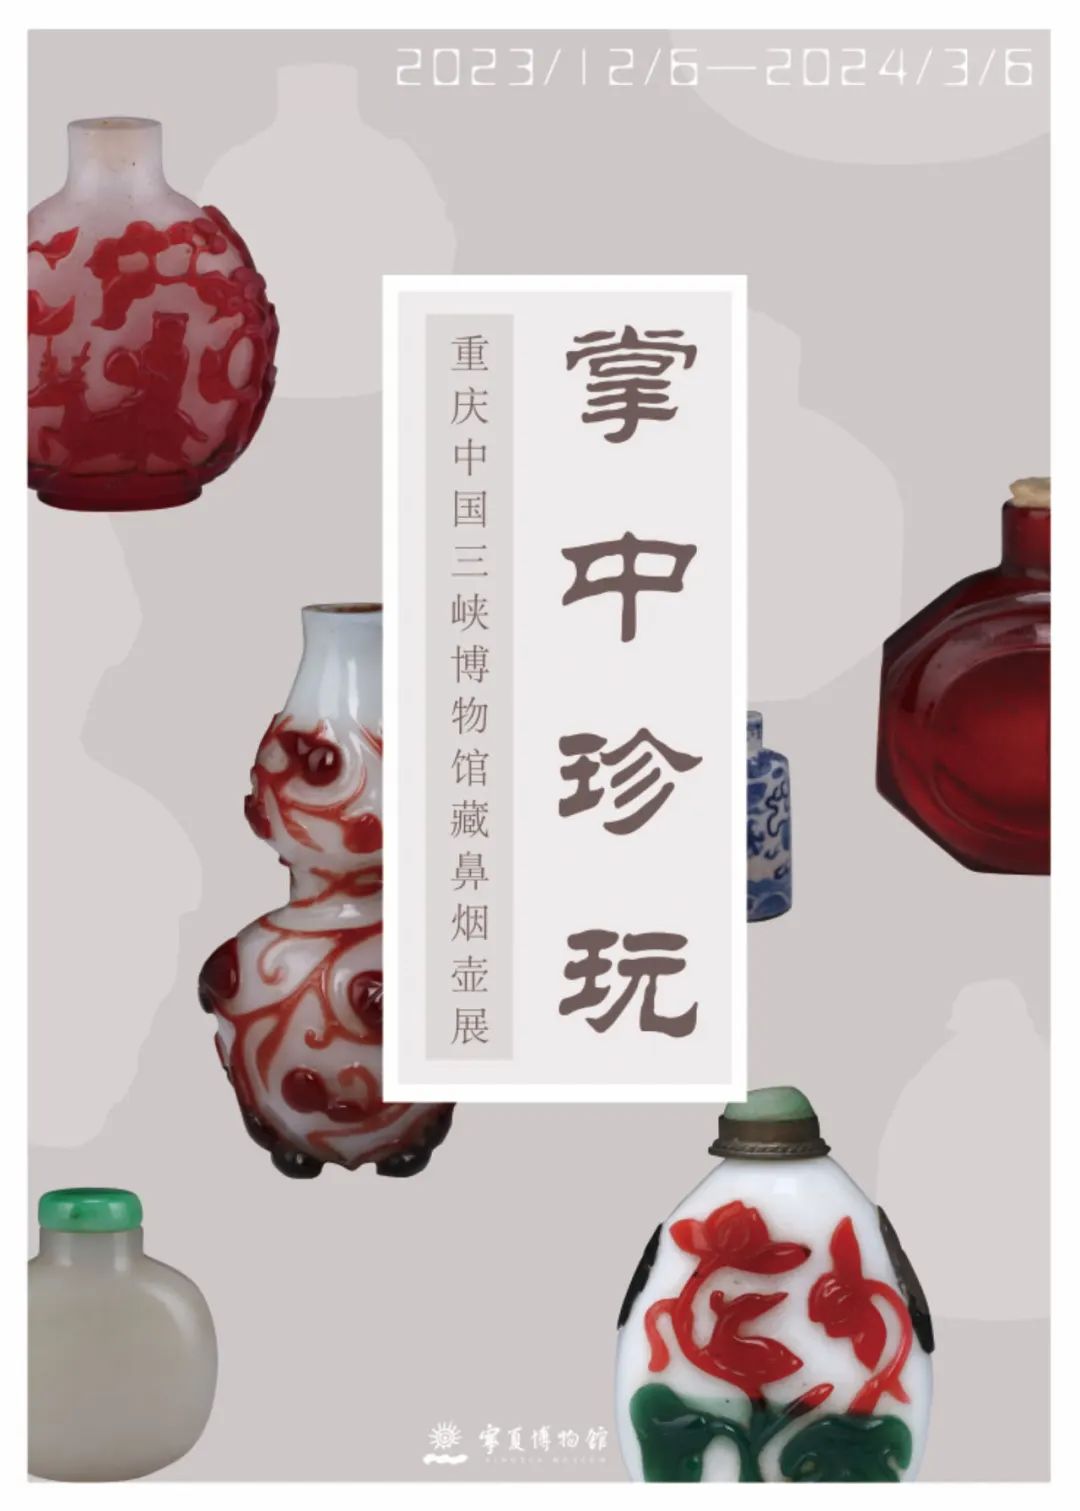 掌中珍玩——重庆中国三峡博物馆藏鼻烟壶展